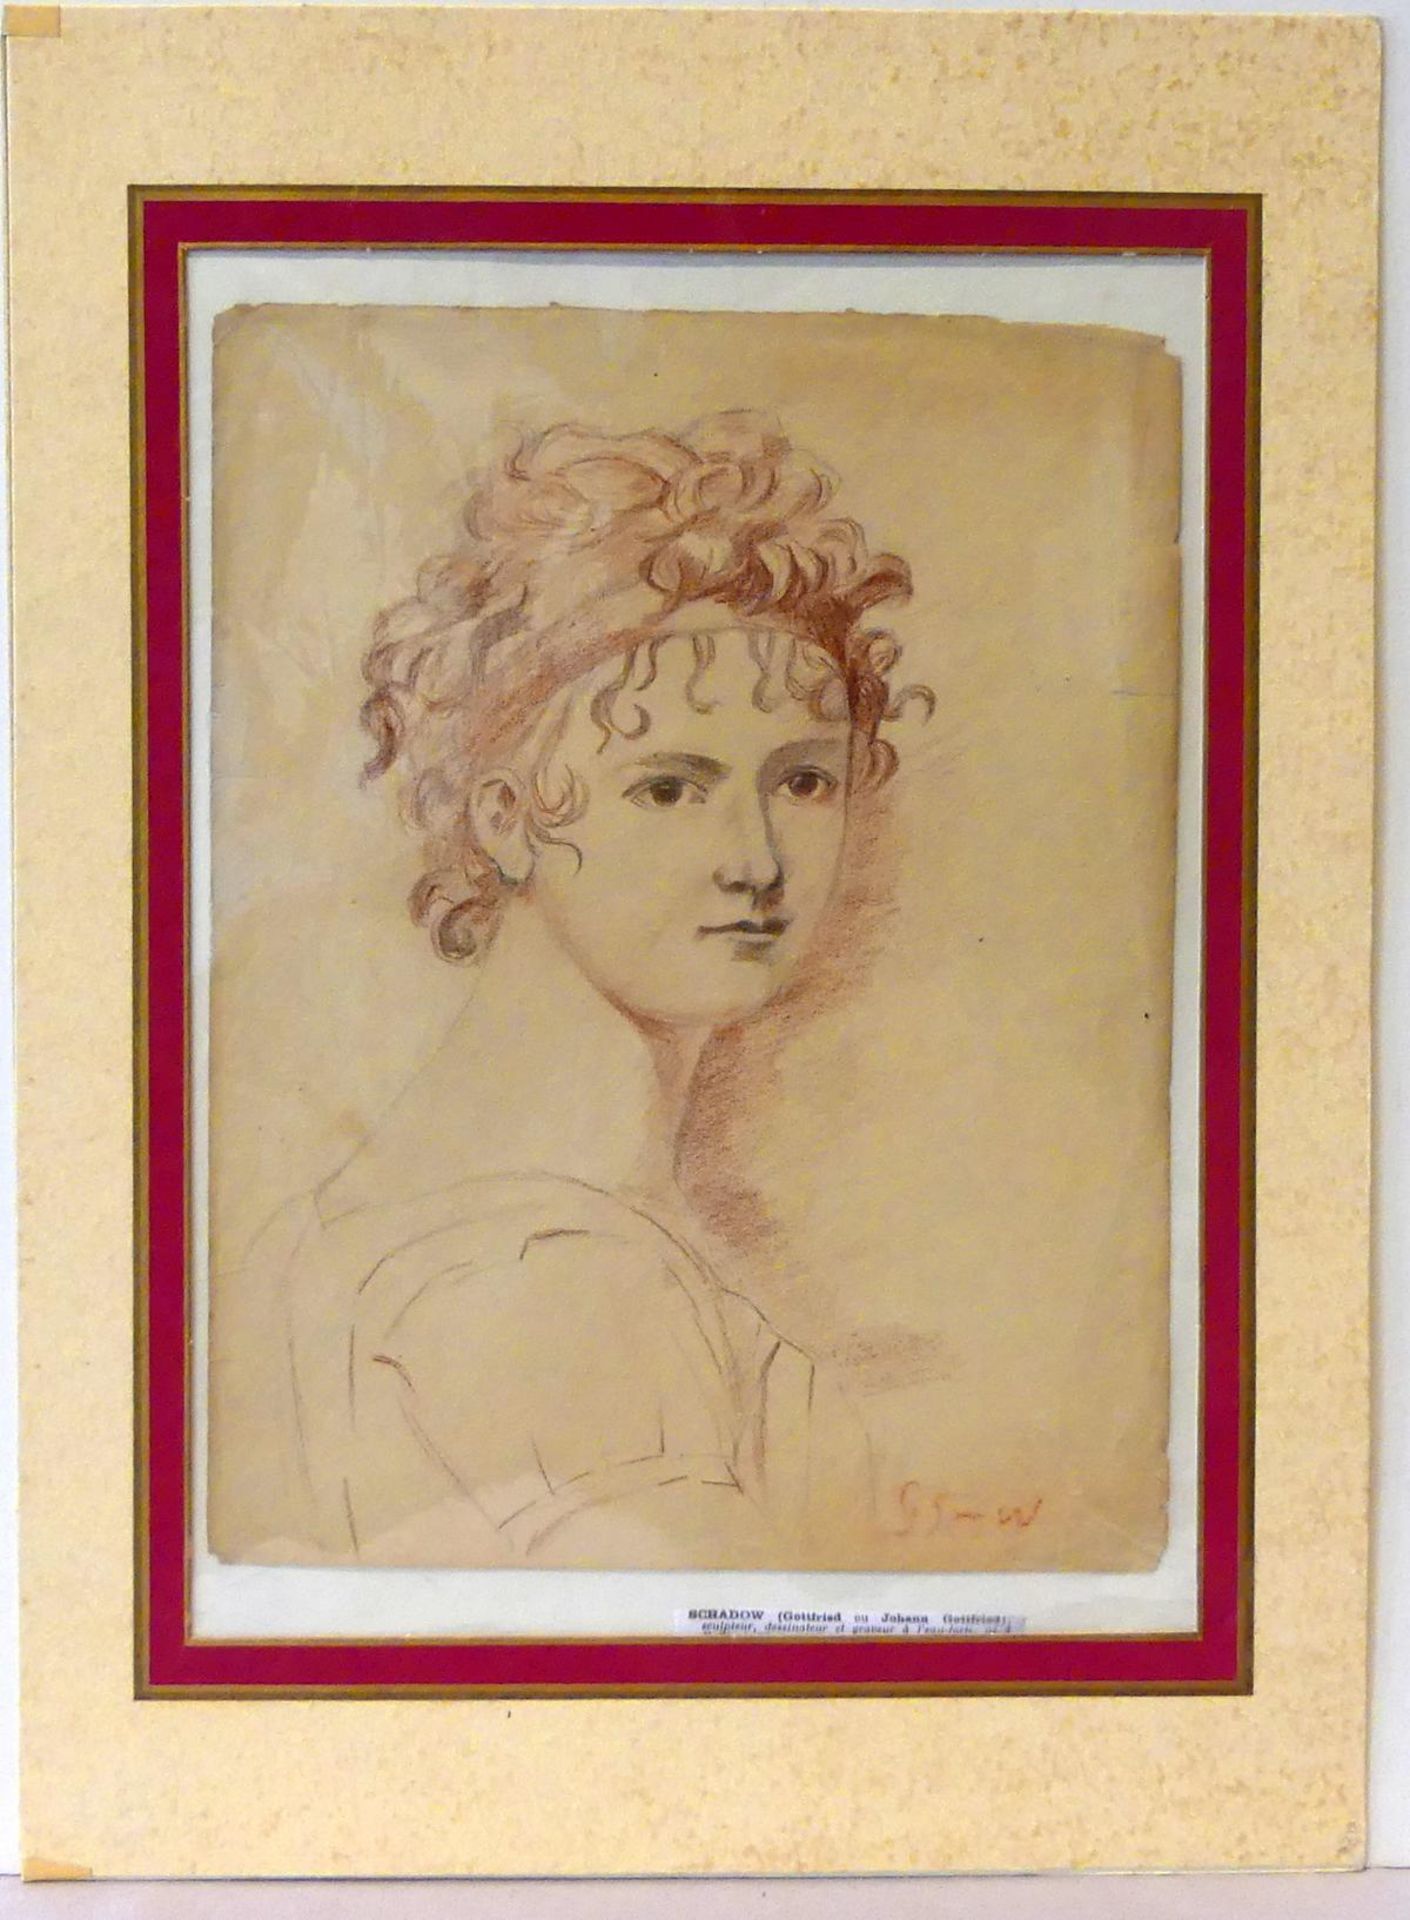 JOHANN GOTTFRIED SCHADOW (1764-1850), "Damenportrait",